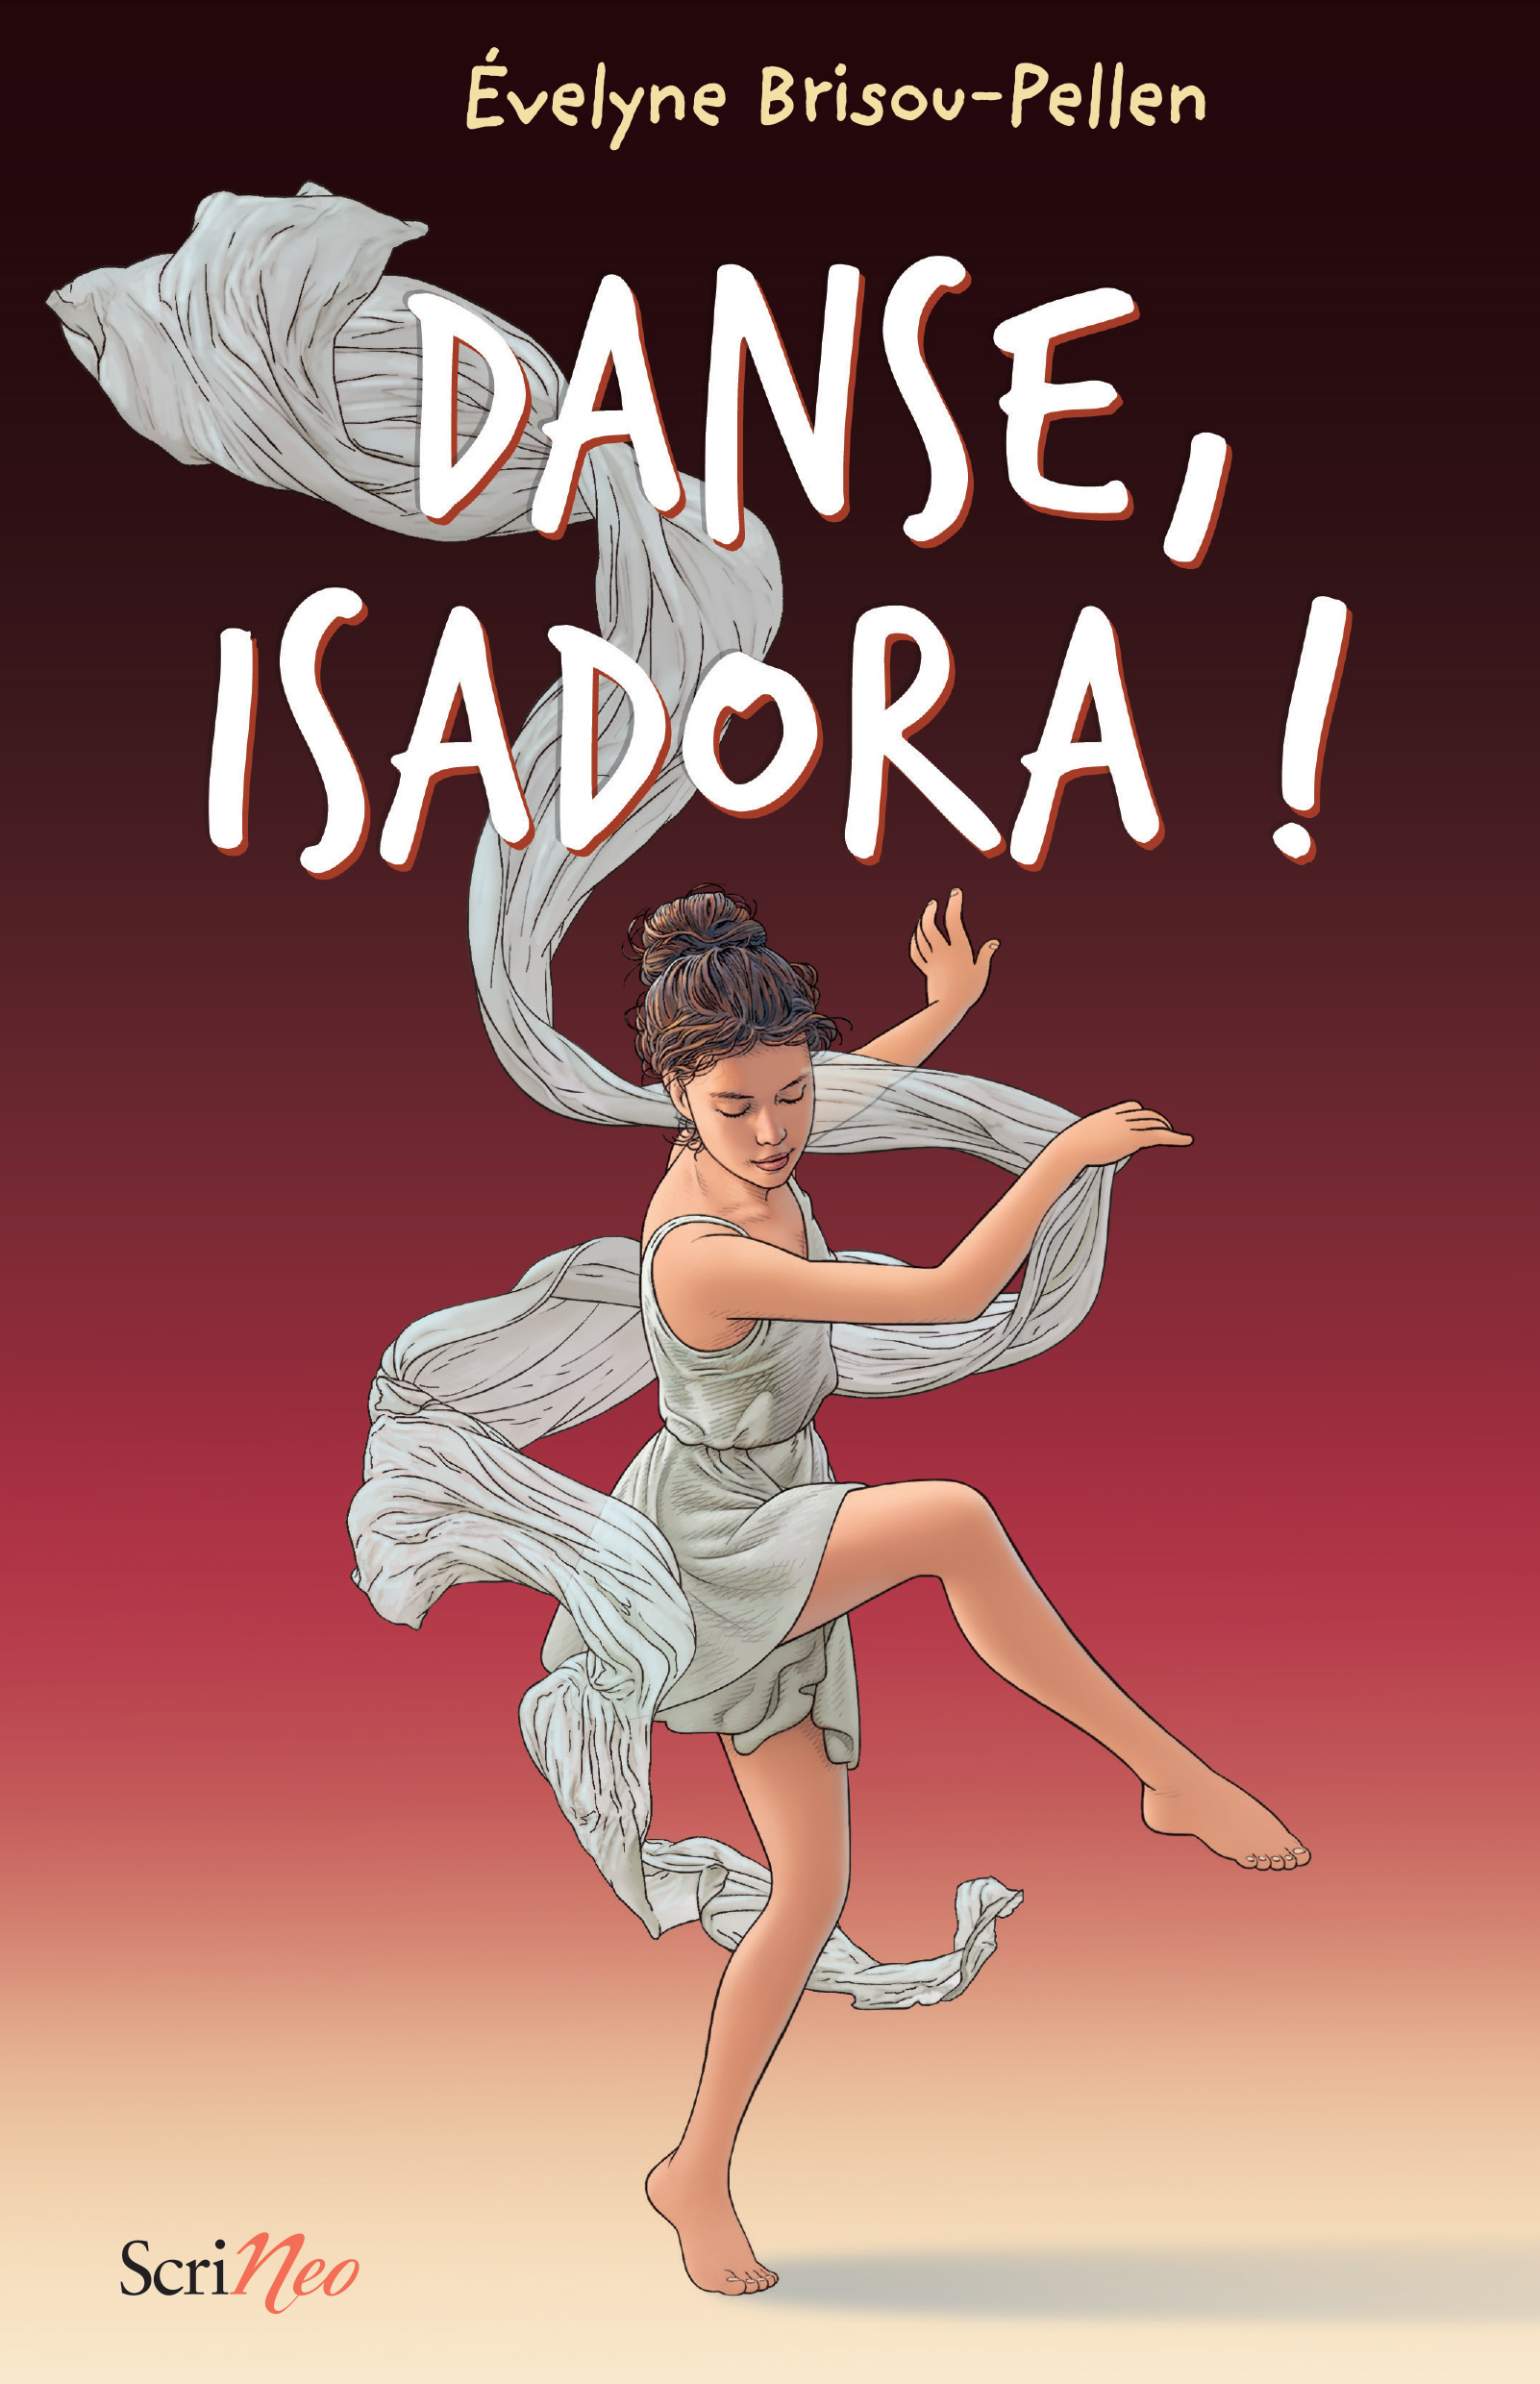 Danse, Isadora !